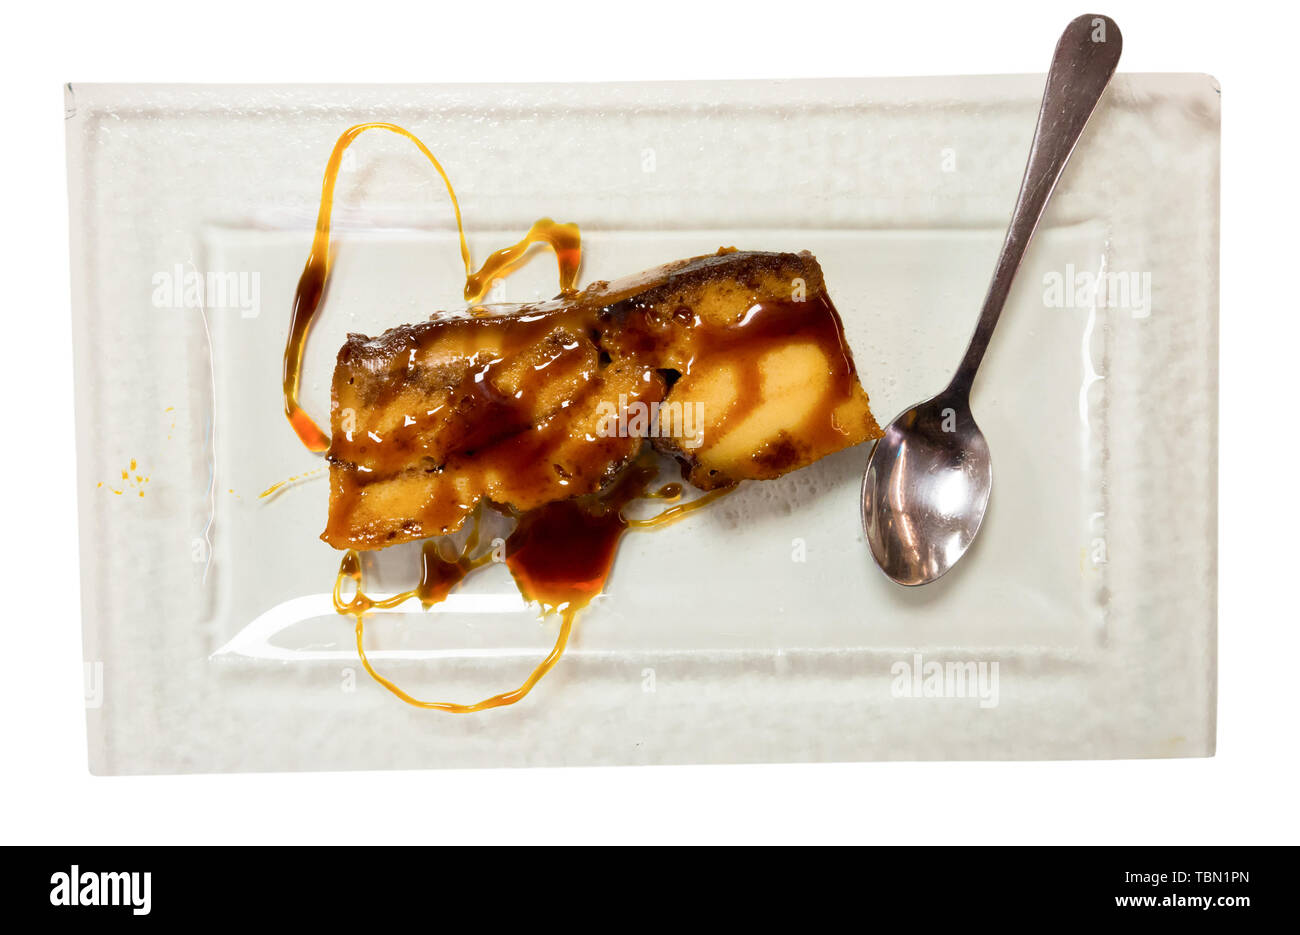 Leckere spanische Dessert Pan de Calatrava - Flan mit Schwamm Kuchen gebacken. Auf weissem Hintergrund Stockfoto